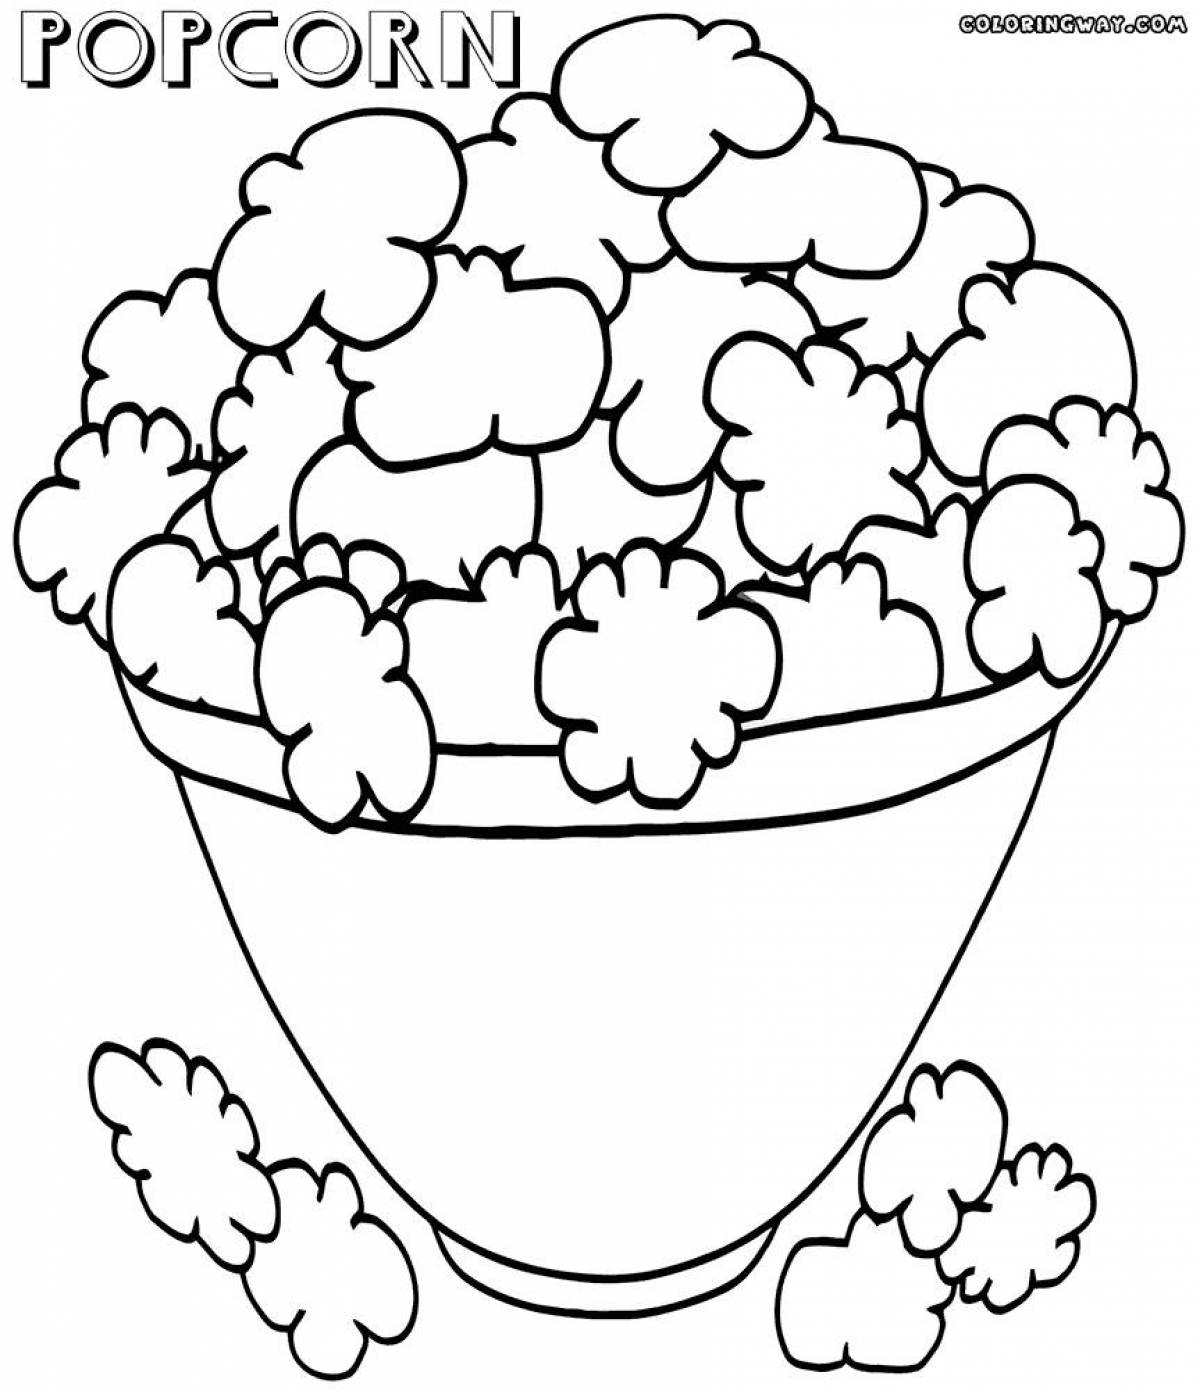 Coloring fragrant popcorn